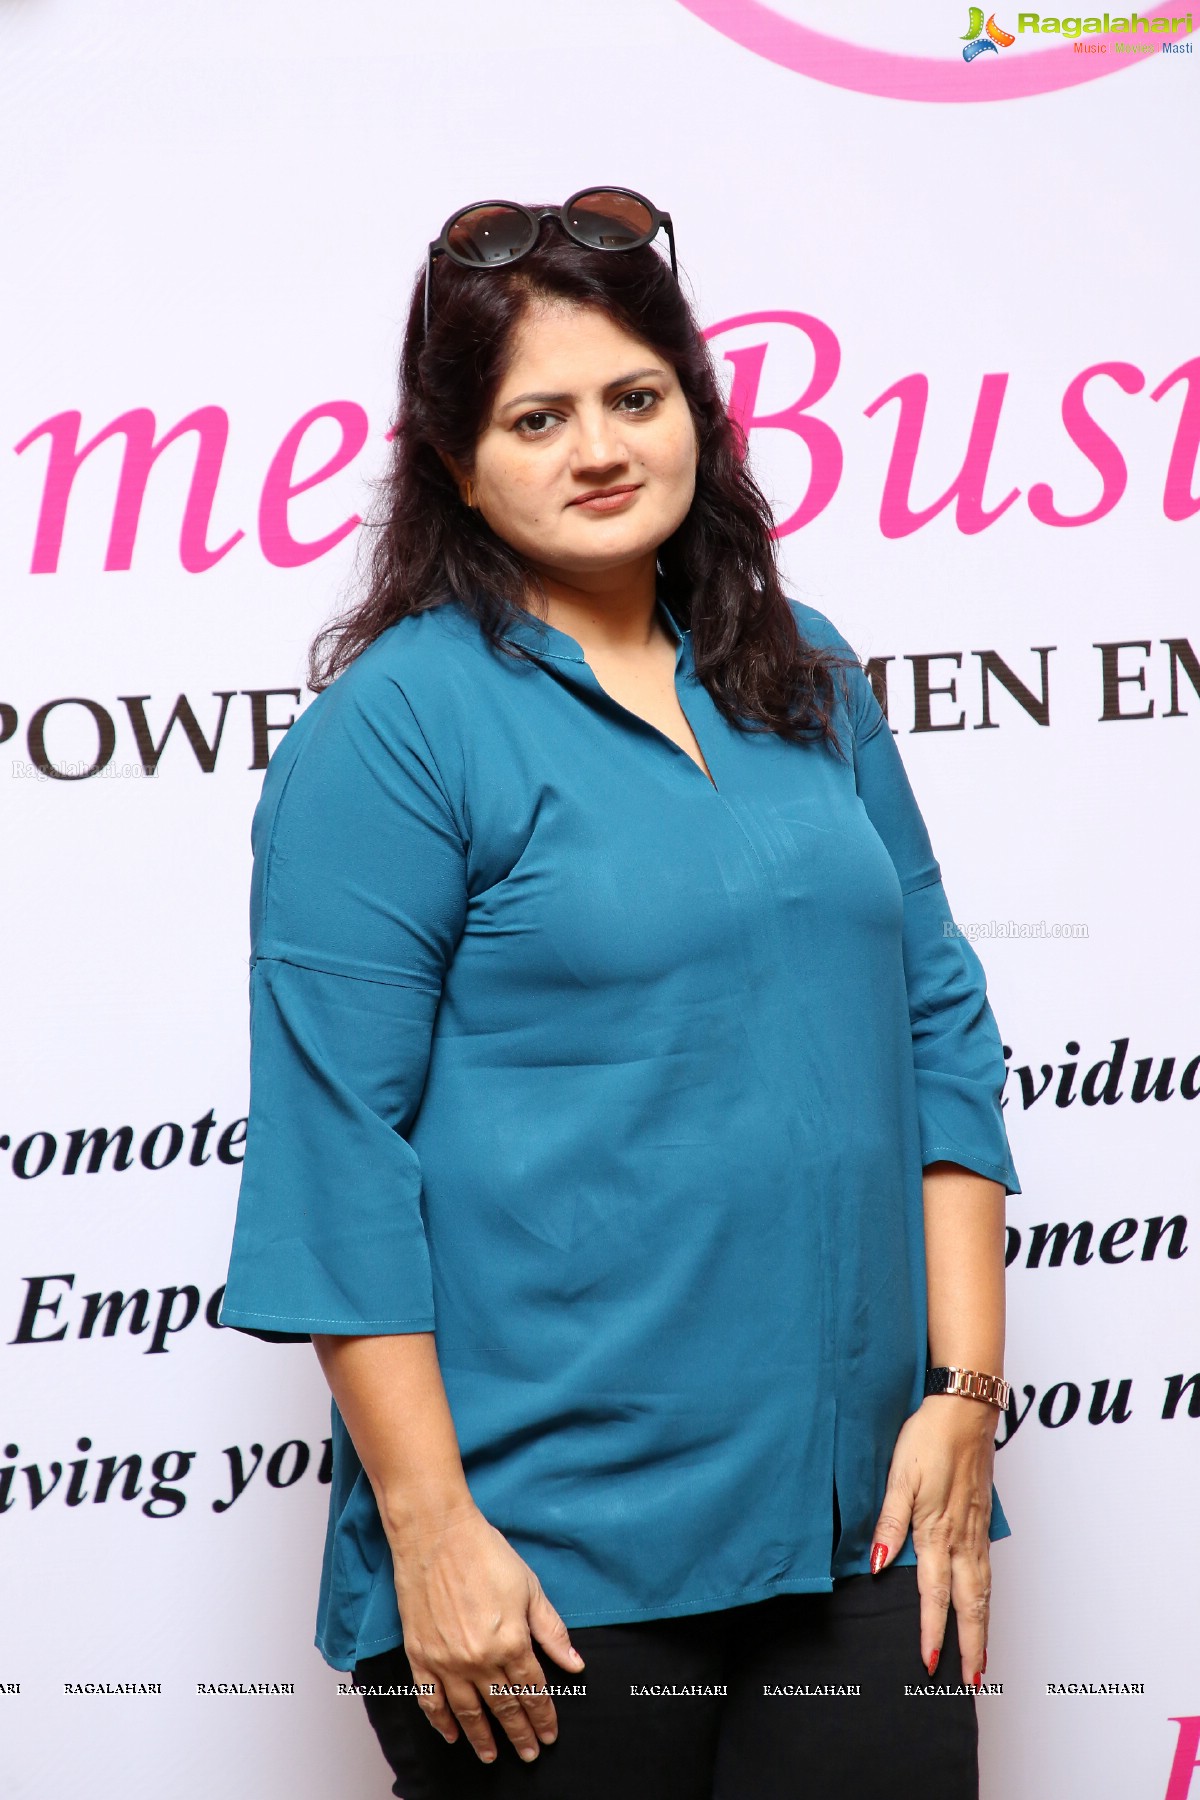 Women Business Cult Empowered Women Empower Woman Curtain Raiser at Marigold